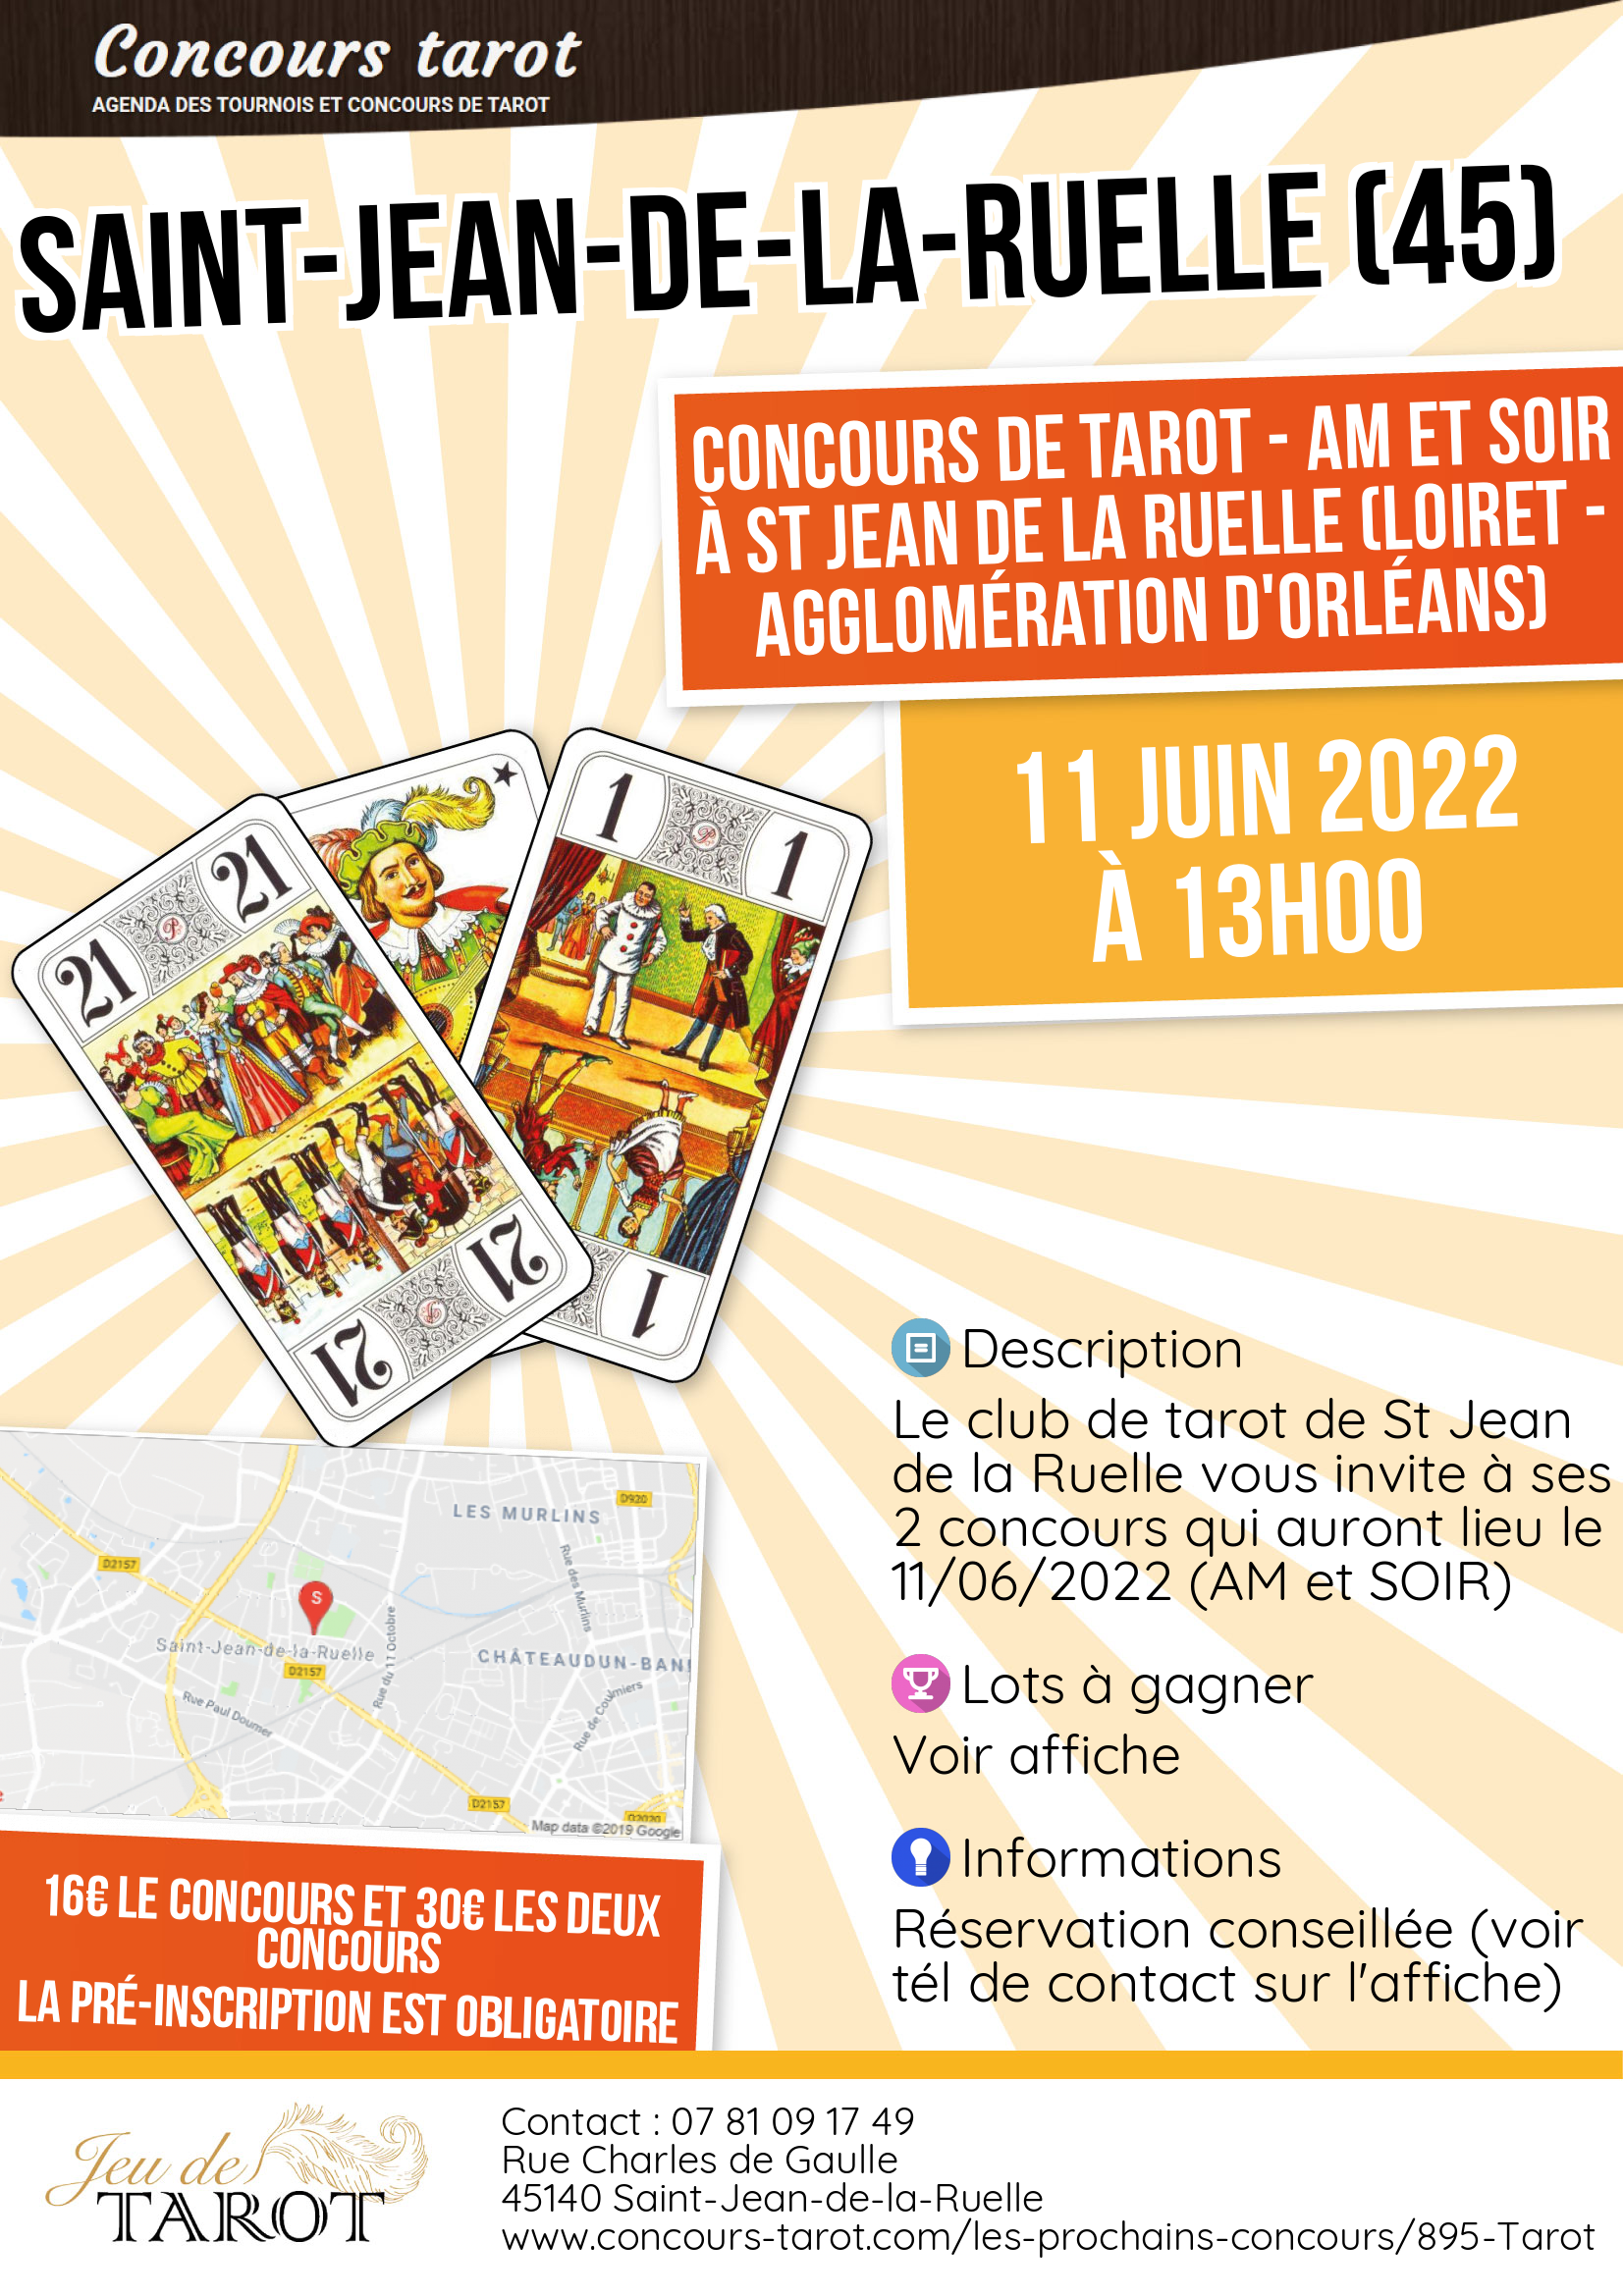 Concours de tarot  AM et SOIR a St Jean de la Ruelle Loiret  agglomeration d Orleans